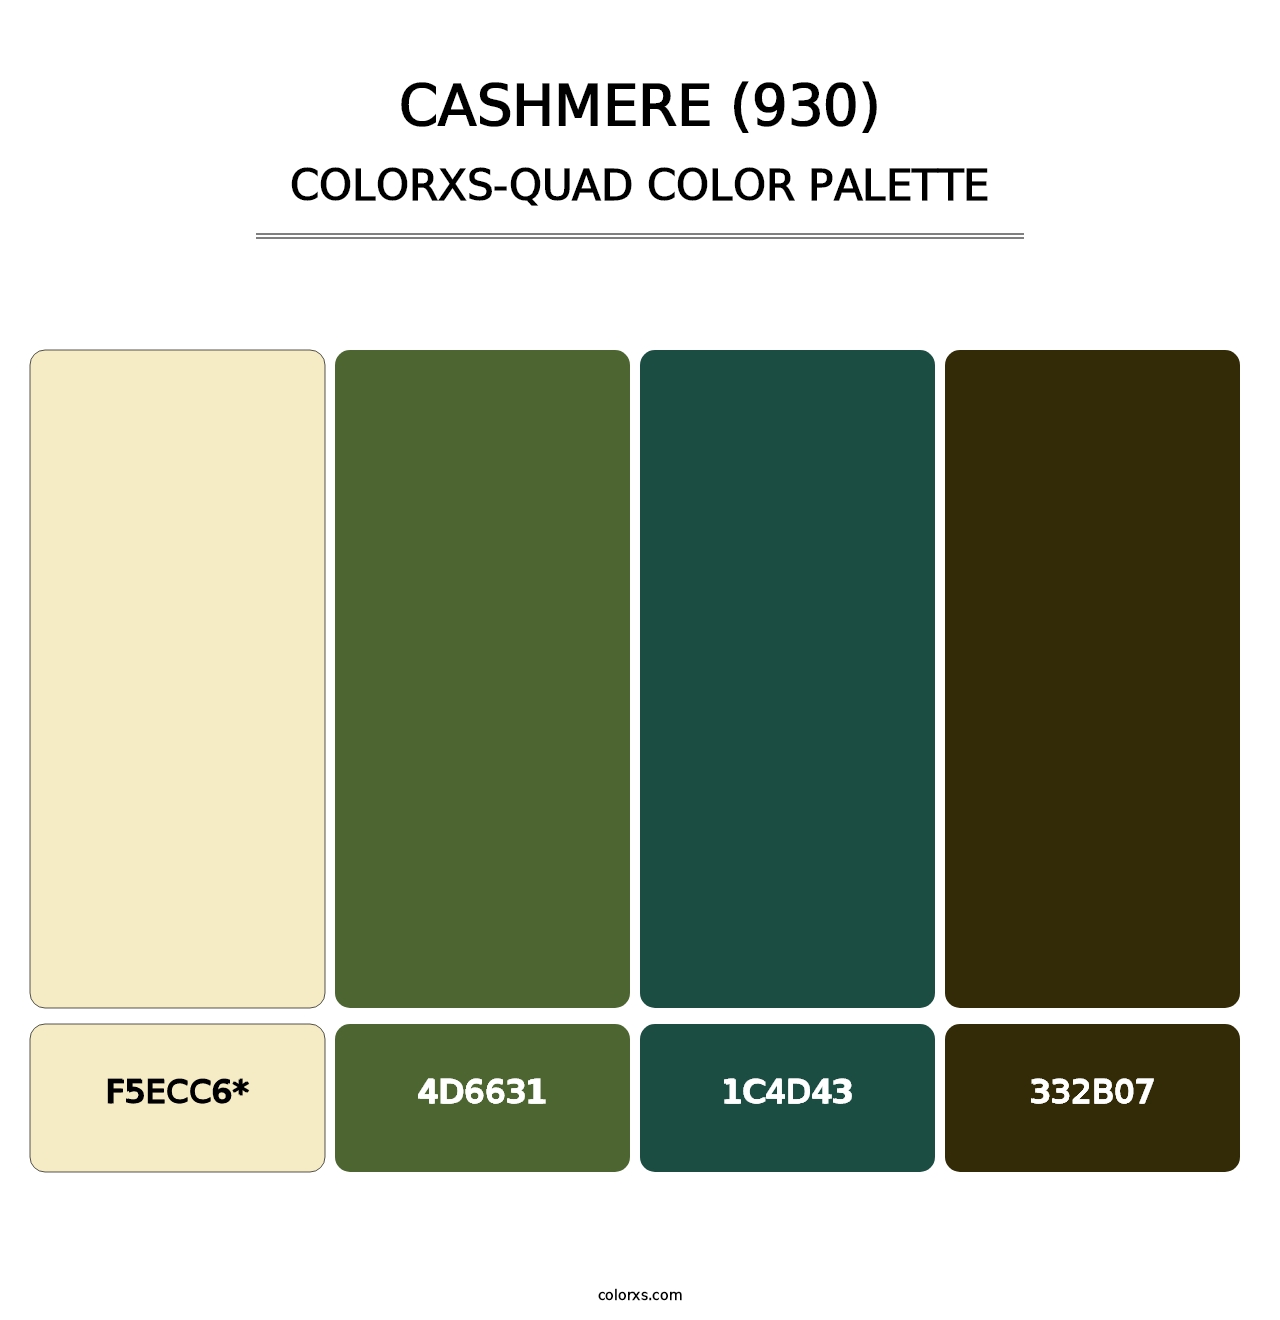 Cashmere (930) - Colorxs Quad Palette